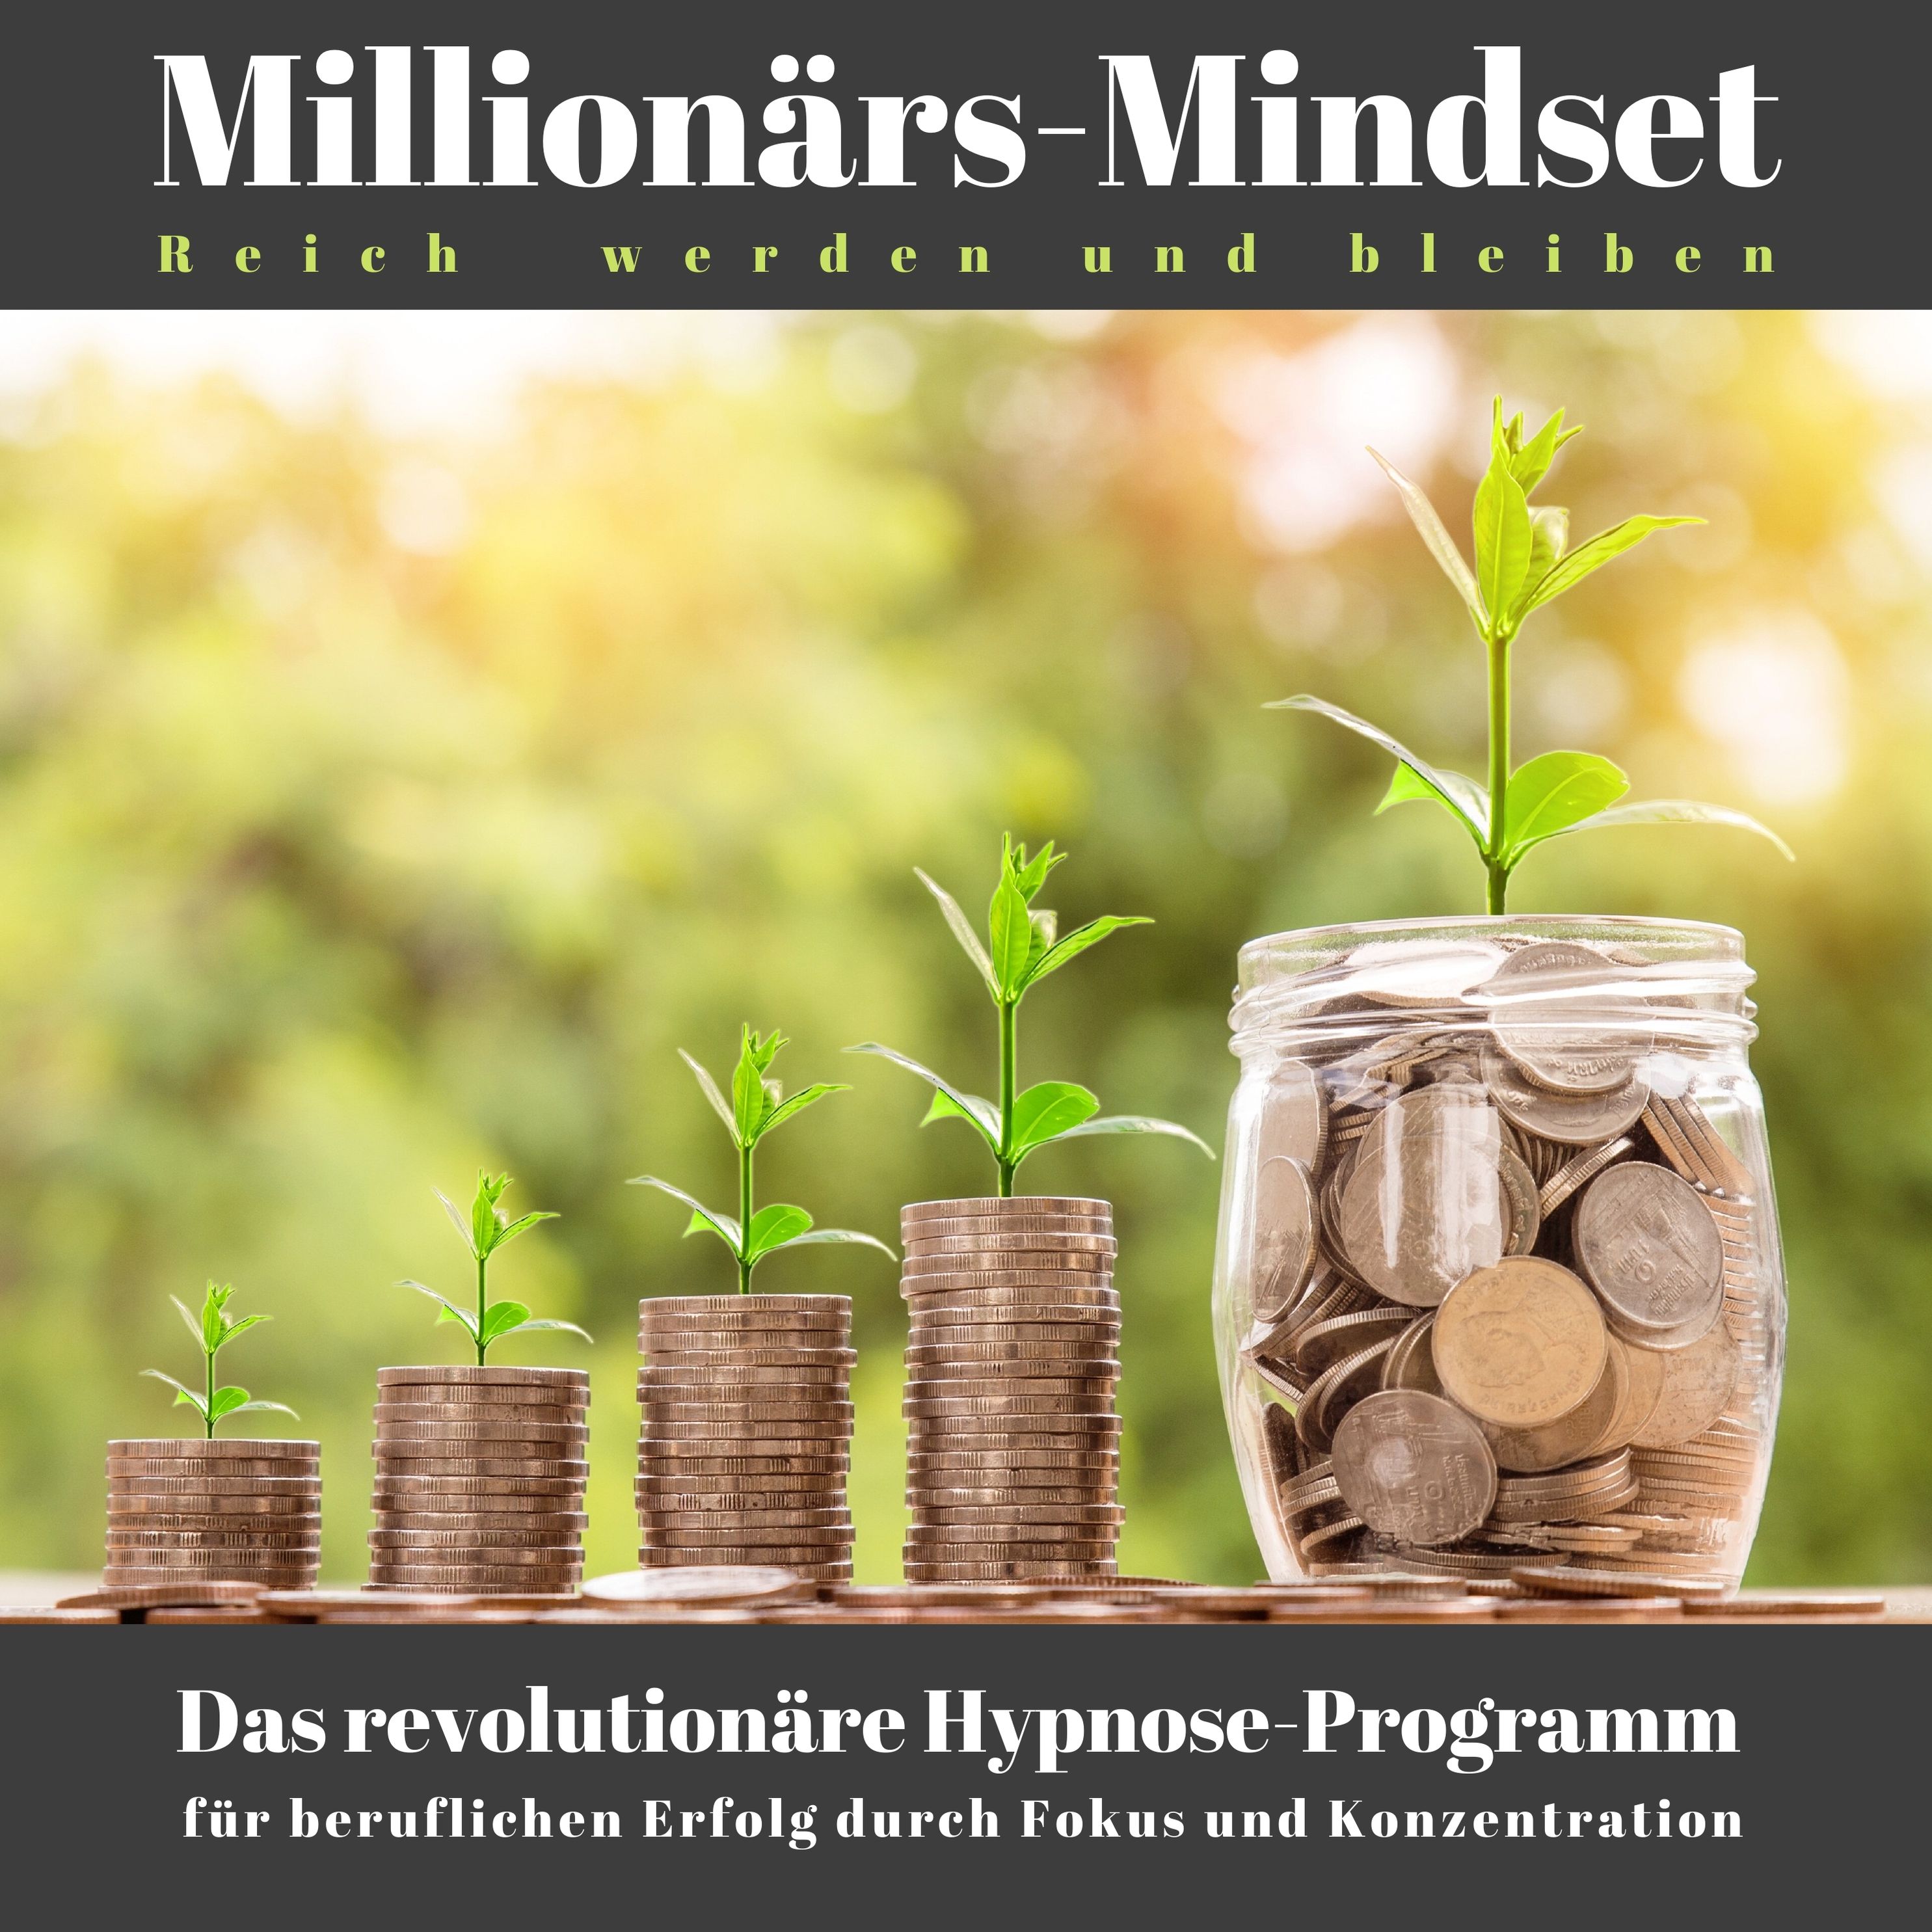 Millionärs-Mindset: Reich werden und bleiben Hörbuch Download